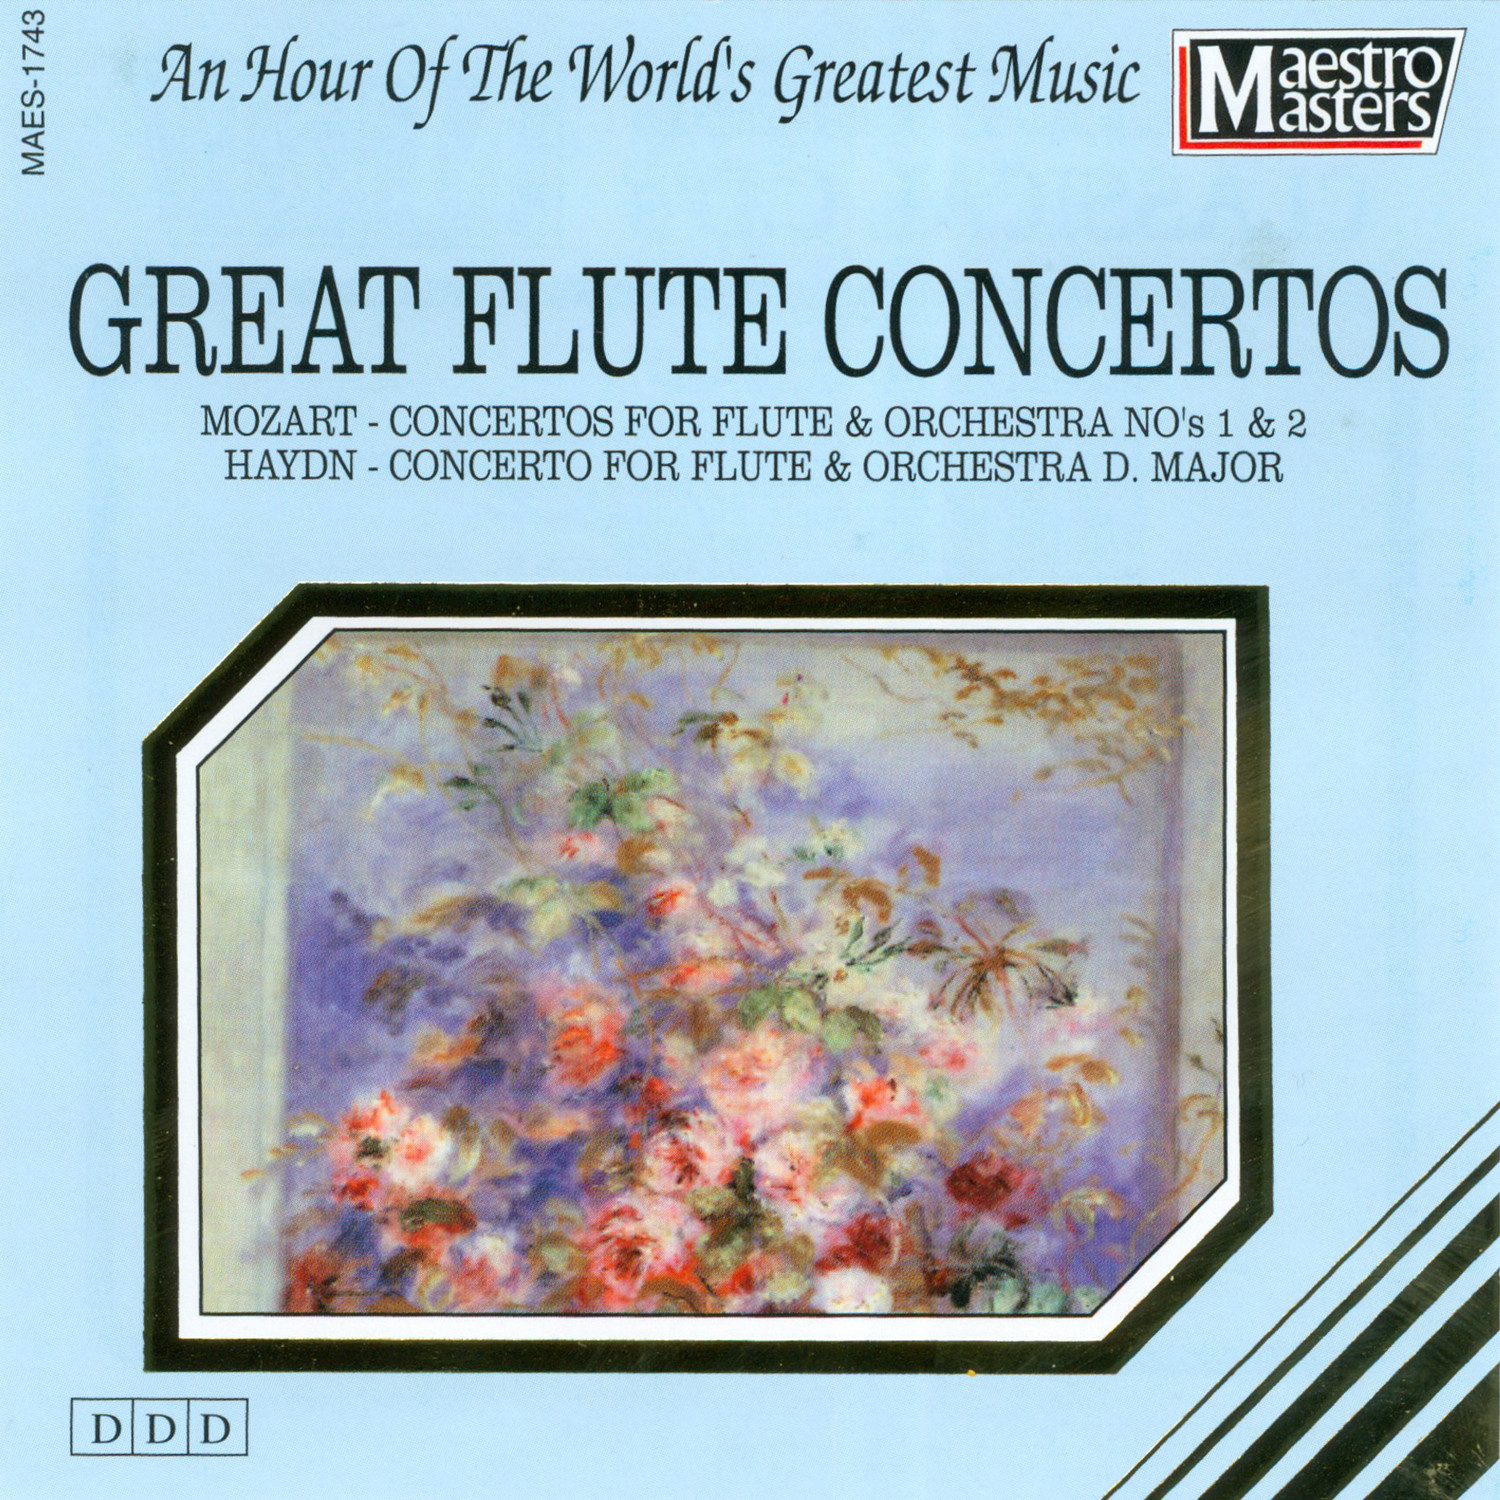 Concerto for Flute and Orchestra No. 1, G Major KV 313 - Adagio Ma Non Troppo